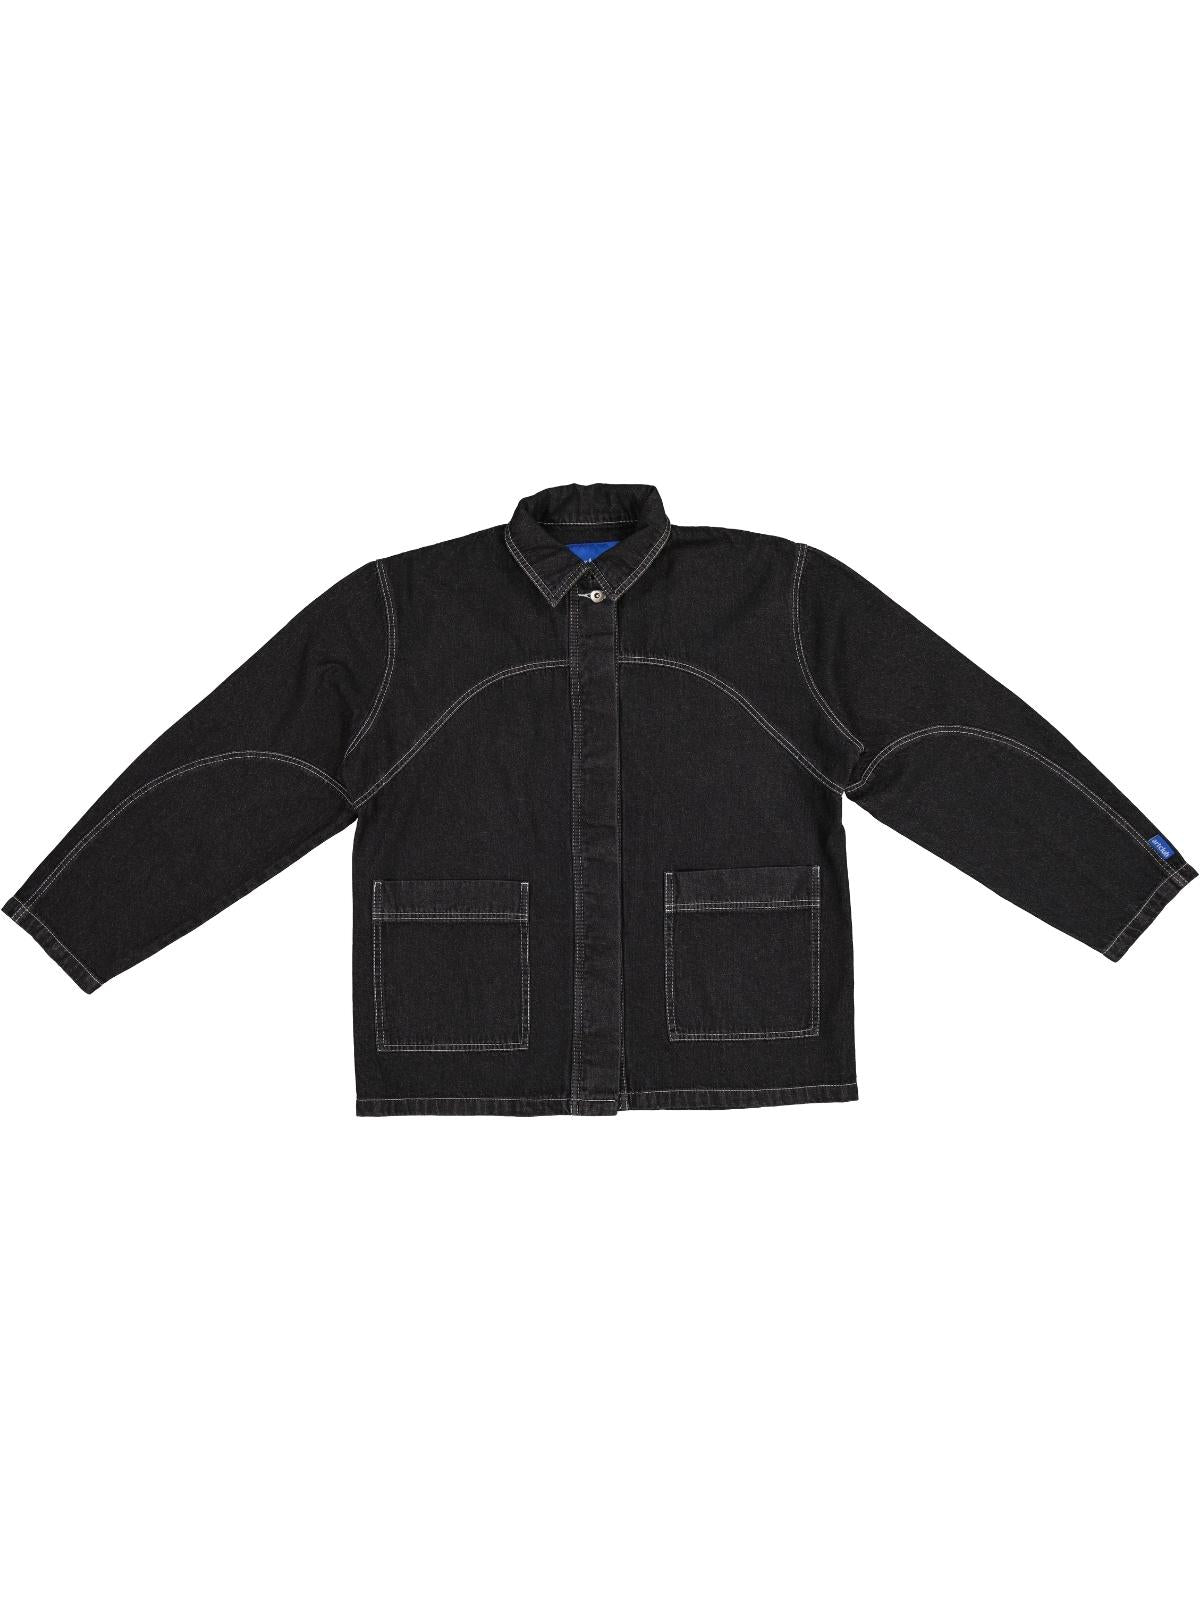 Engineered Denim Jacket - Black